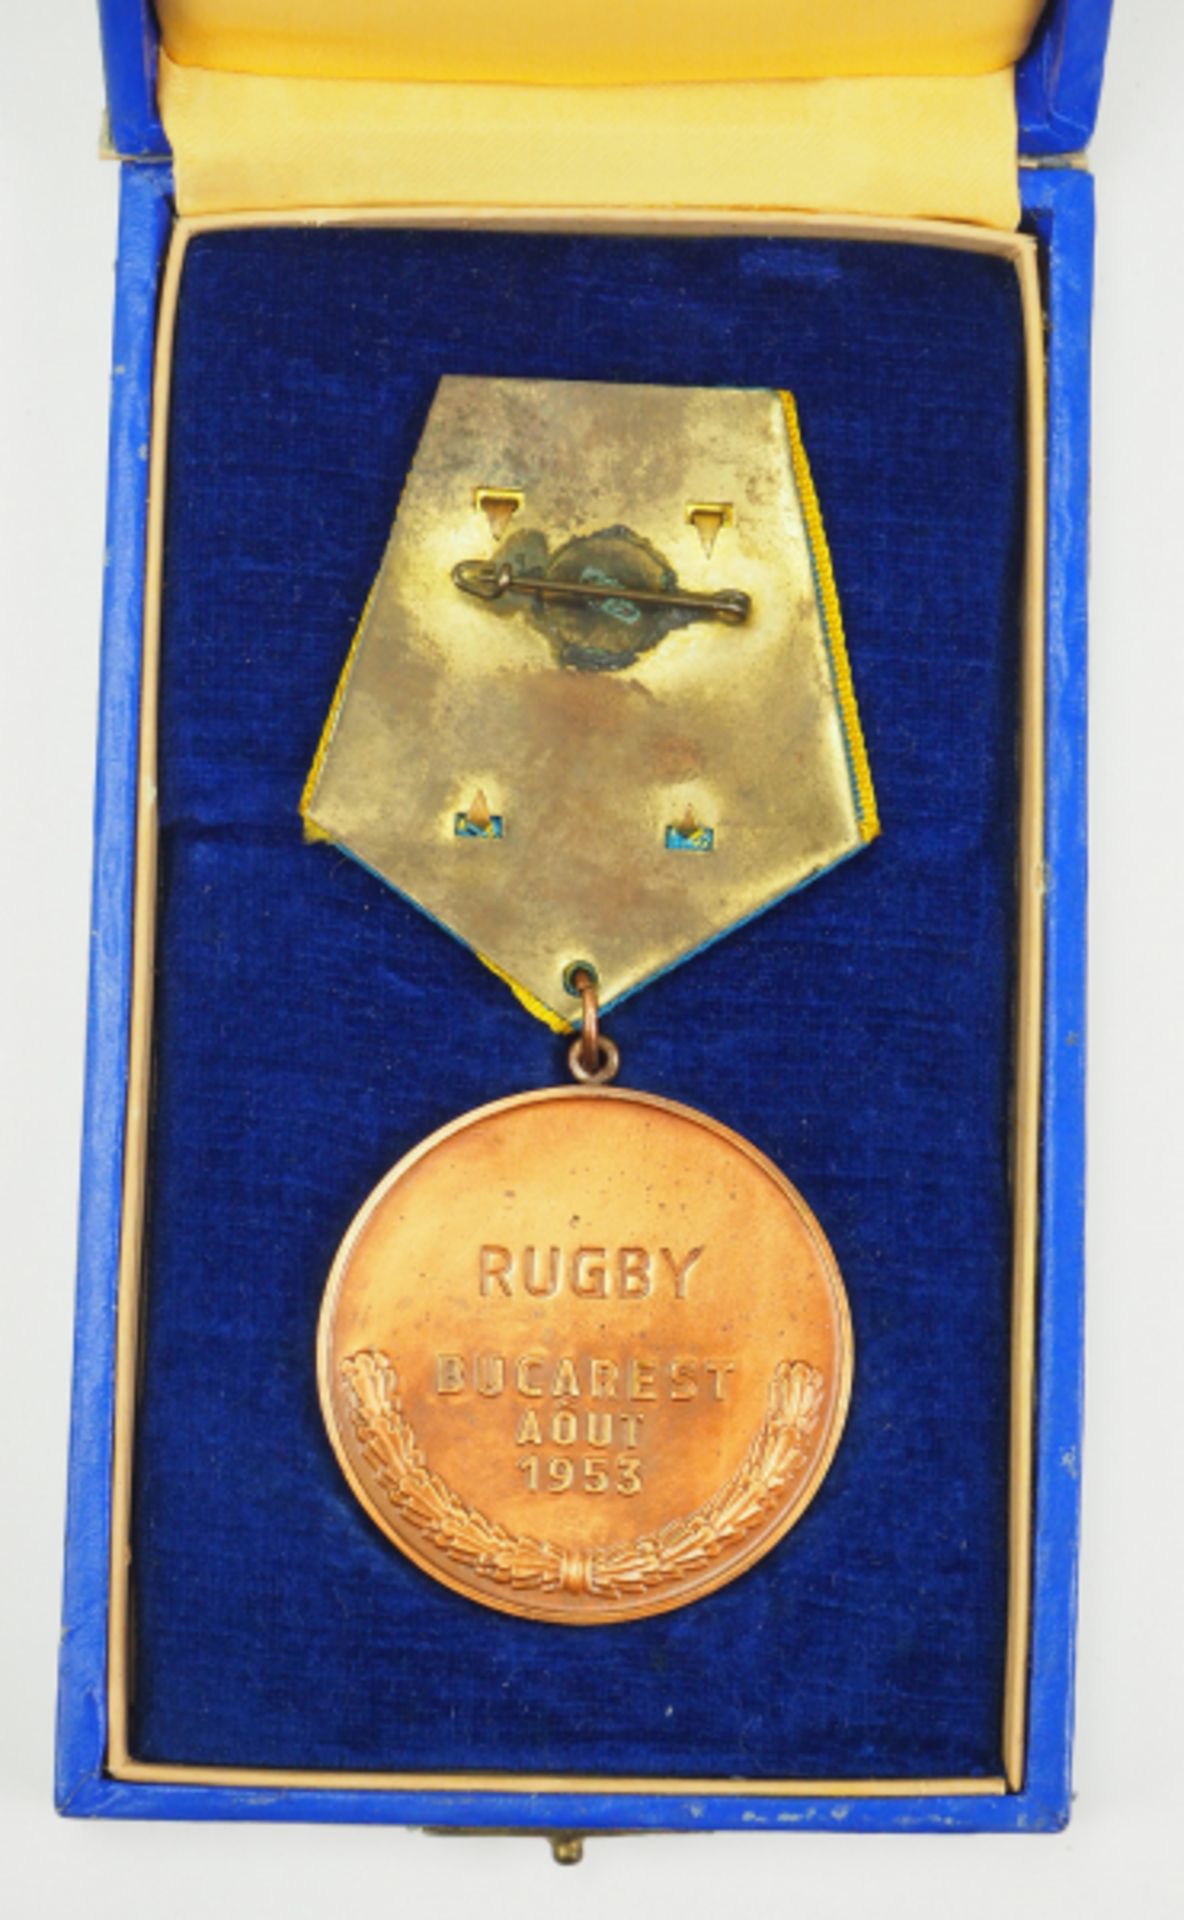 Rumänien: Internationale Jugendspiele, Bukarest 1953, Bronzemedaille - Rugby, im Etui. - Bild 2 aus 2